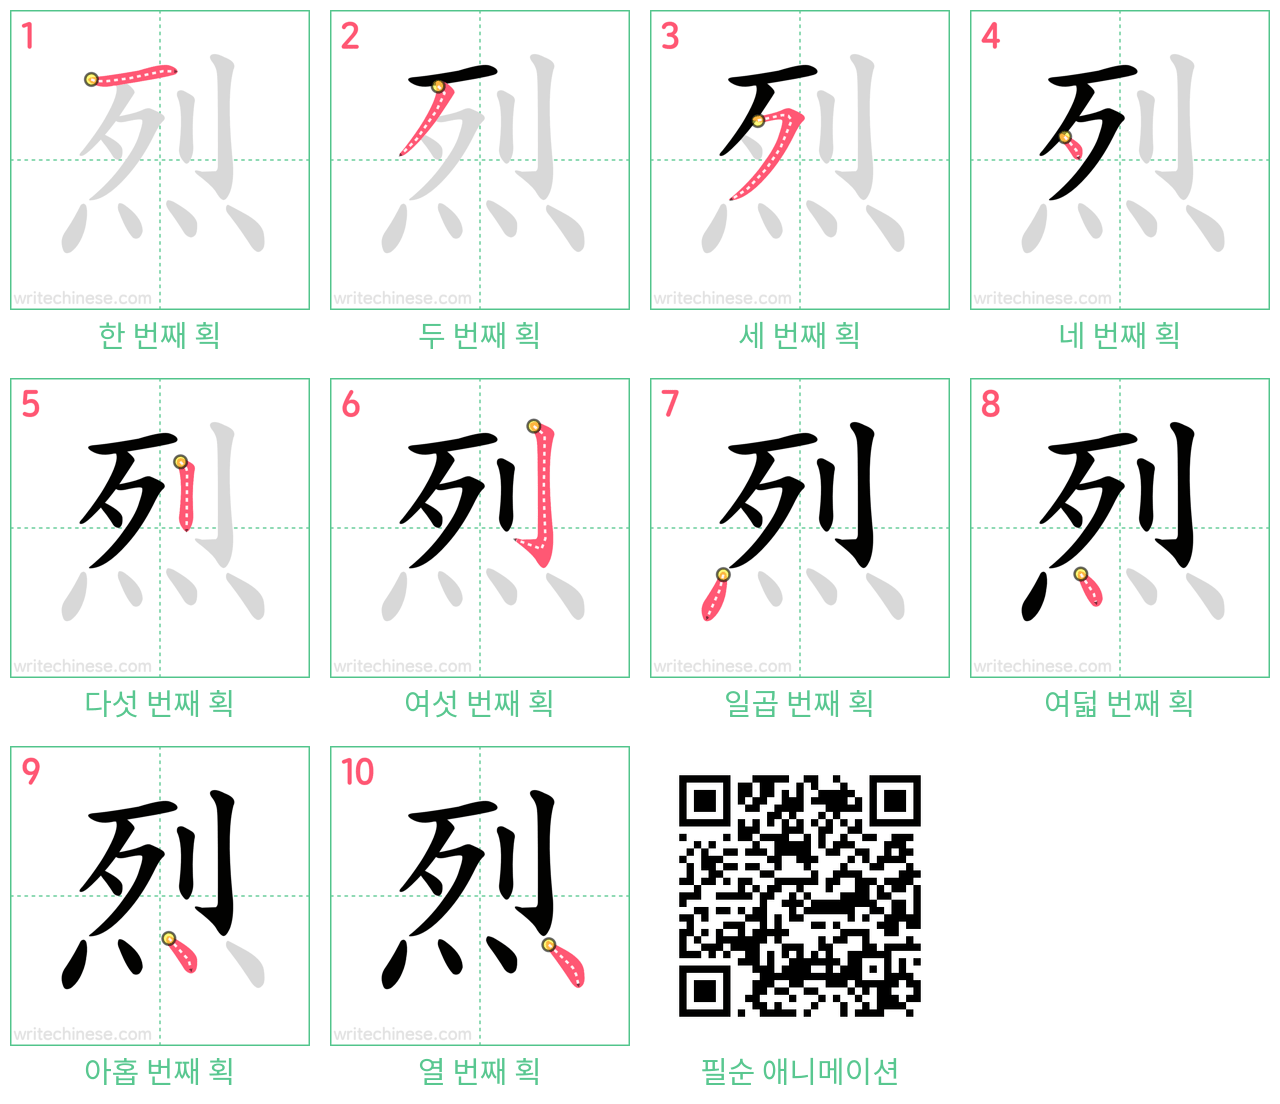 烈 step-by-step stroke order diagrams